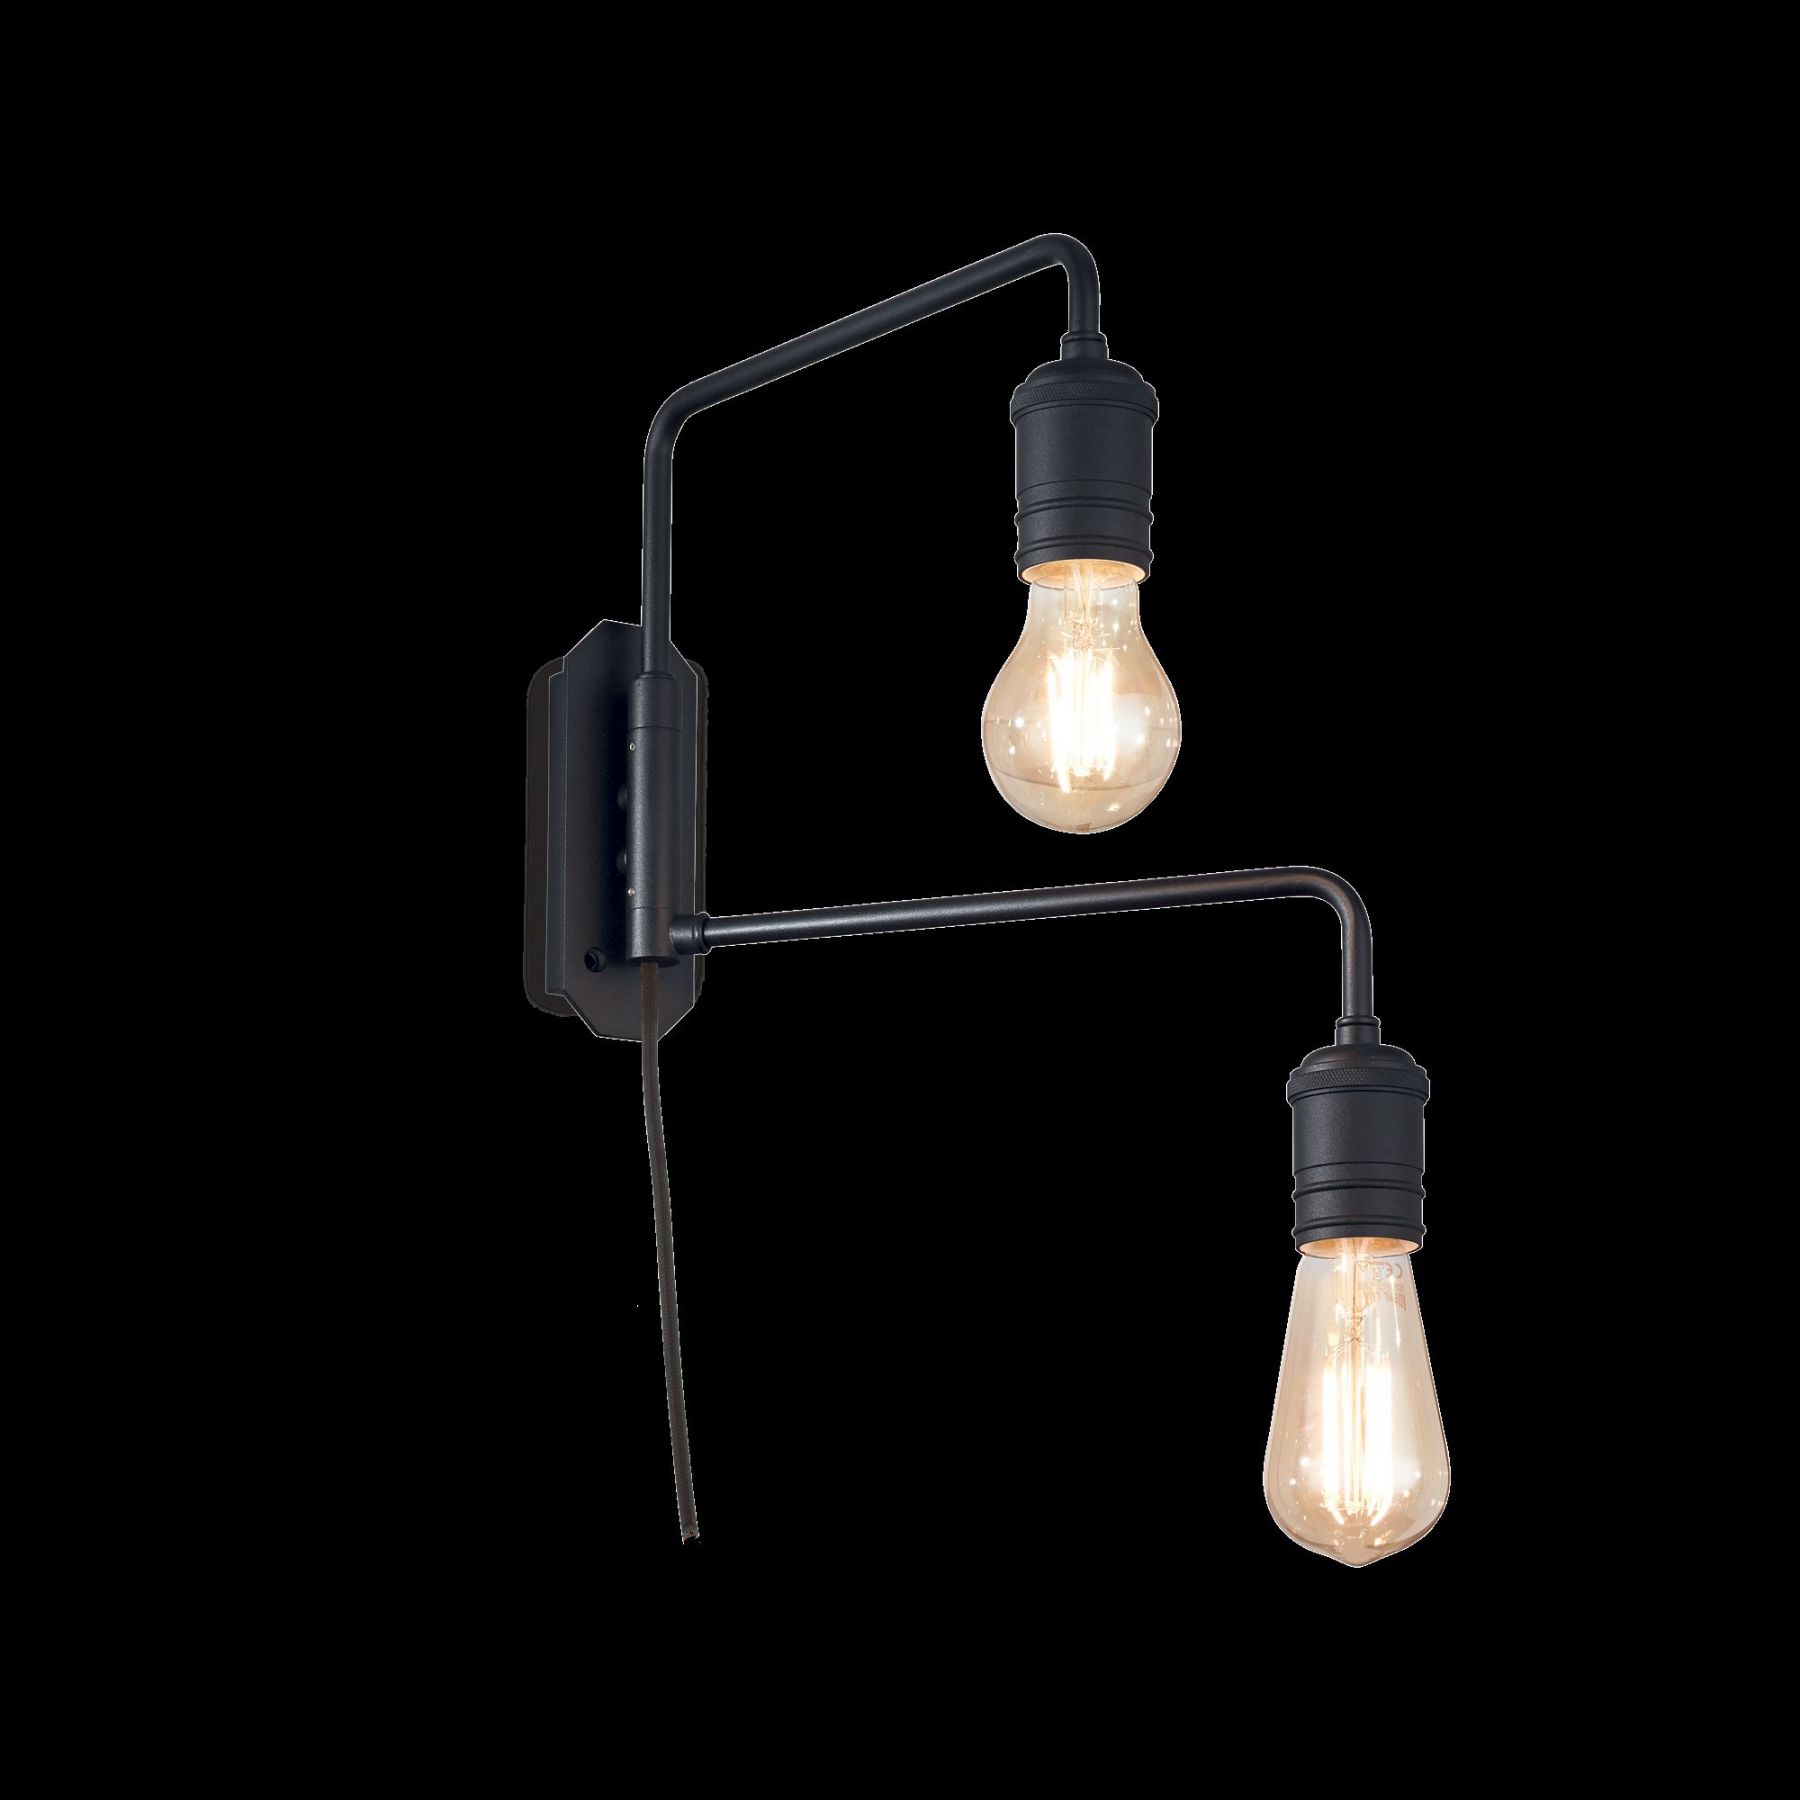 Ideal Lux 242385 nástěnná lampa Triumph 2x60W | E27 - černá, s nastavitelnými rameny - Dekolamp s.r.o.